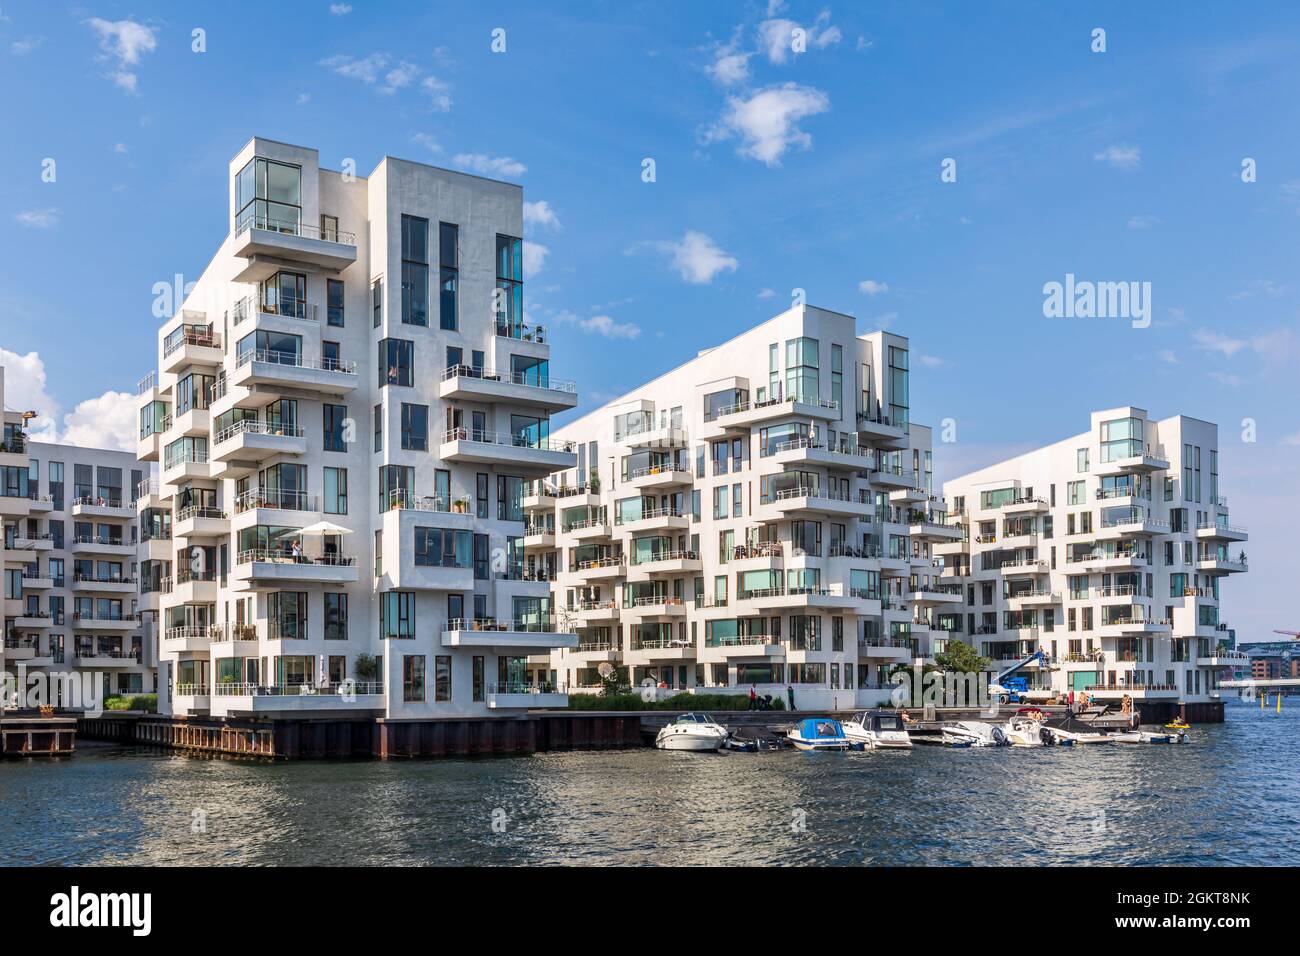 Award winning architecture of residential buildings Havneholmen at Kalvebod Brygge in the port of Copenhagen, Denmark Stock Photo